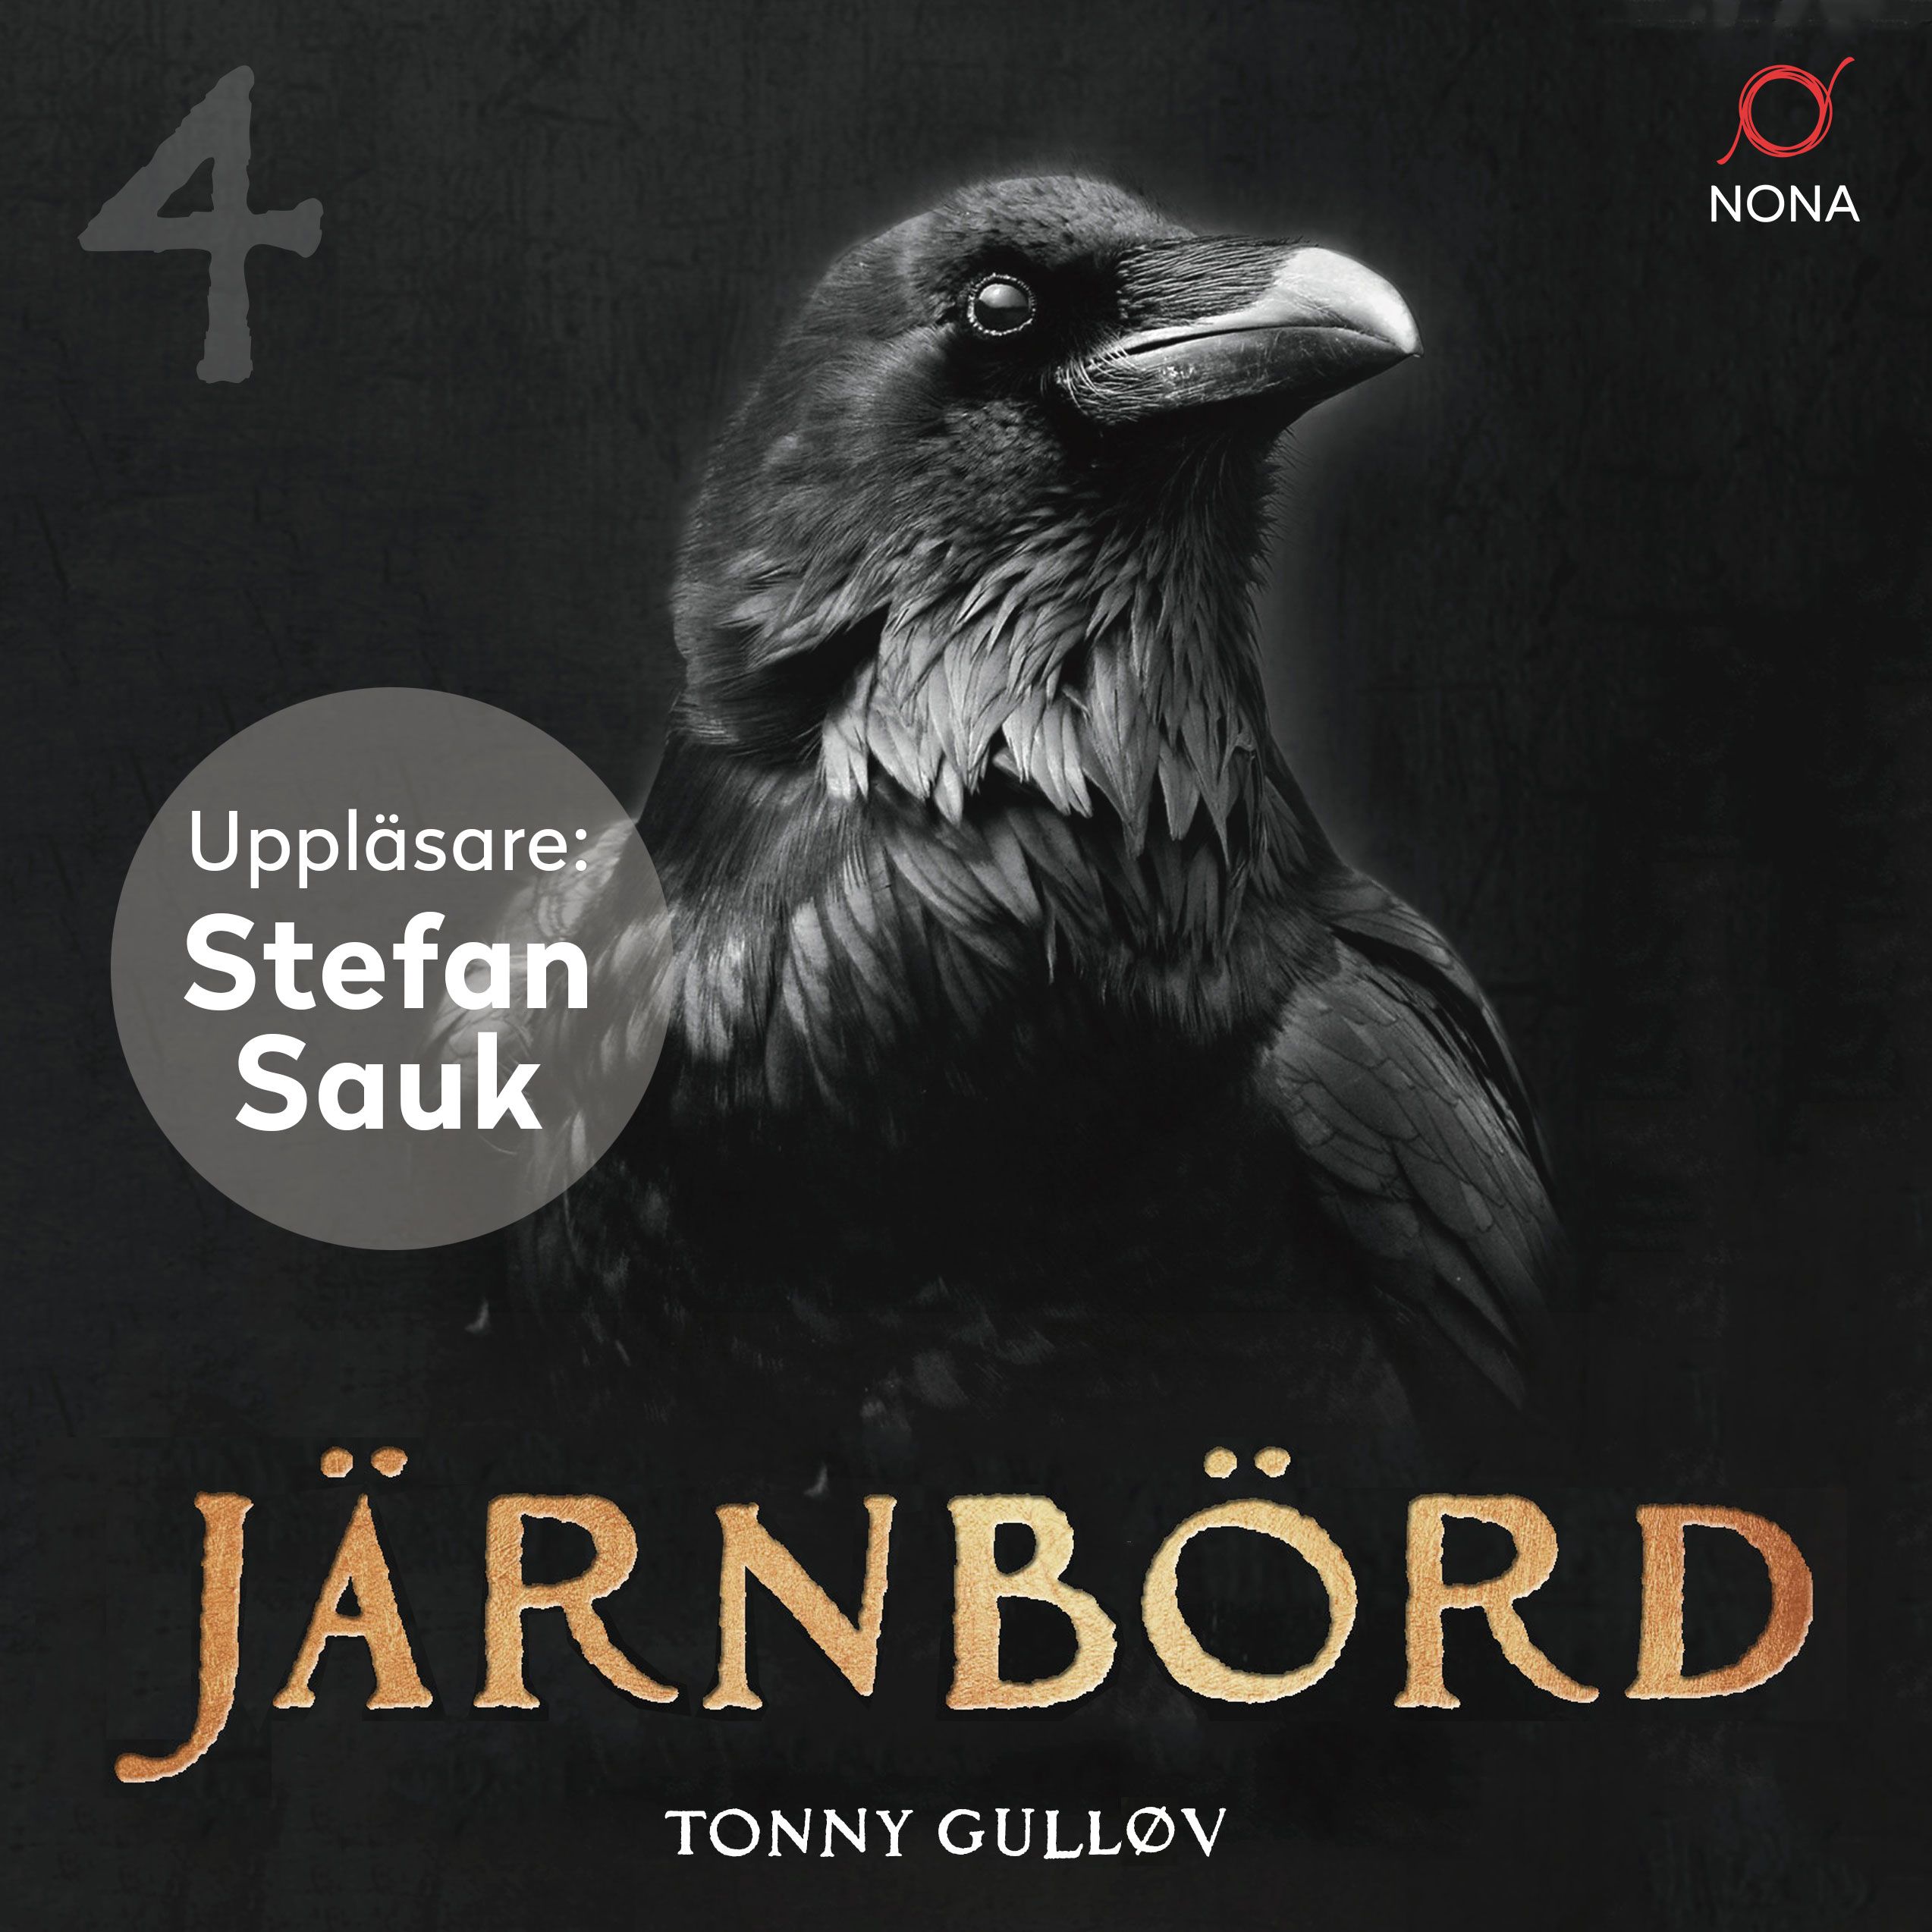 Järnbörd, ljudbok av Tonny Gulløv